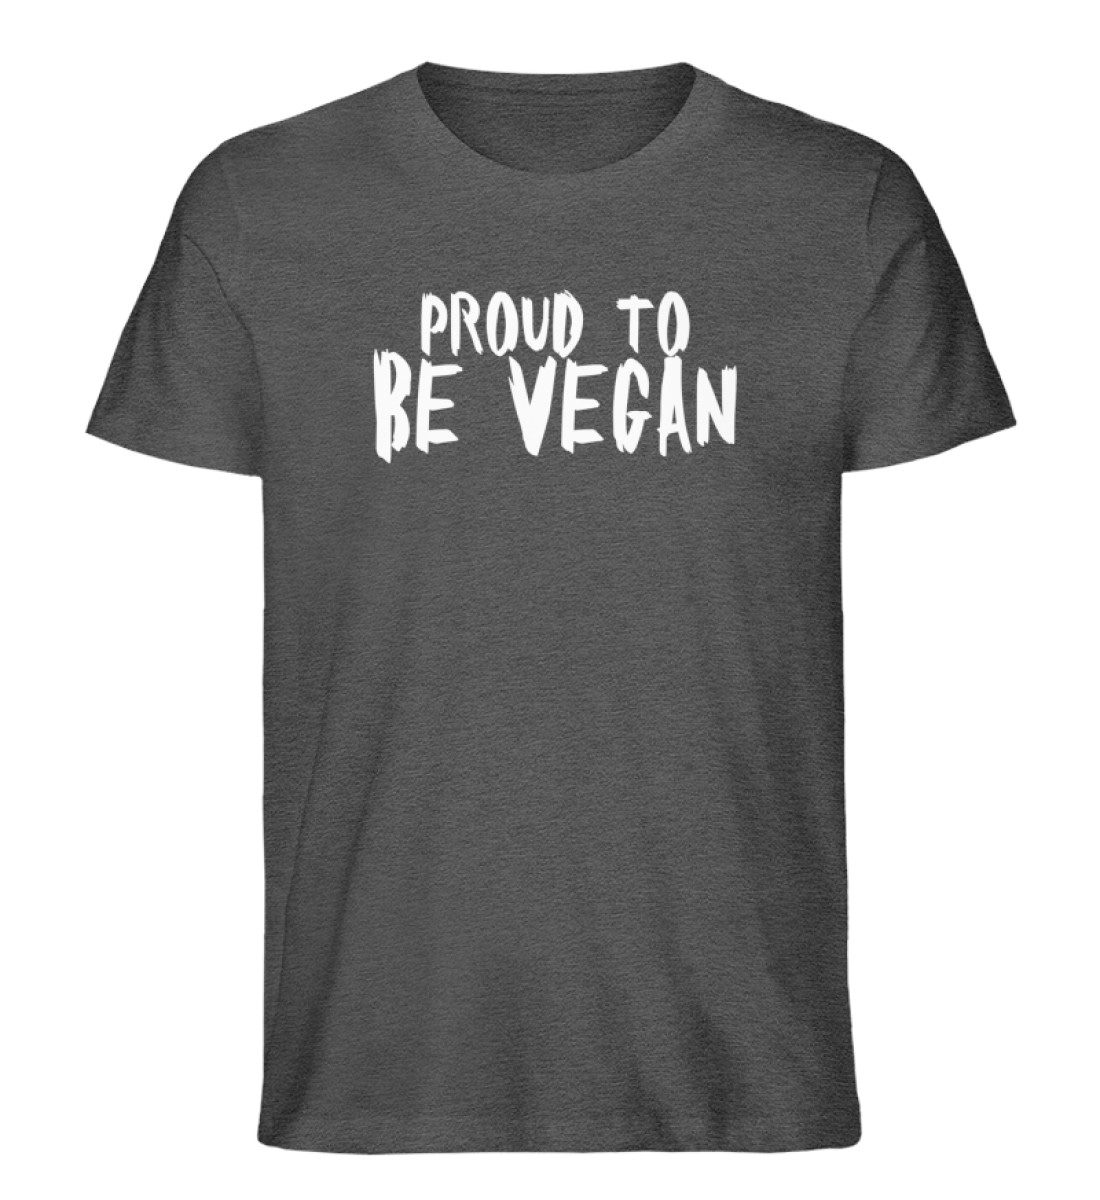 Proud to be Vegan - Herren Organic Melange Shirt-6898